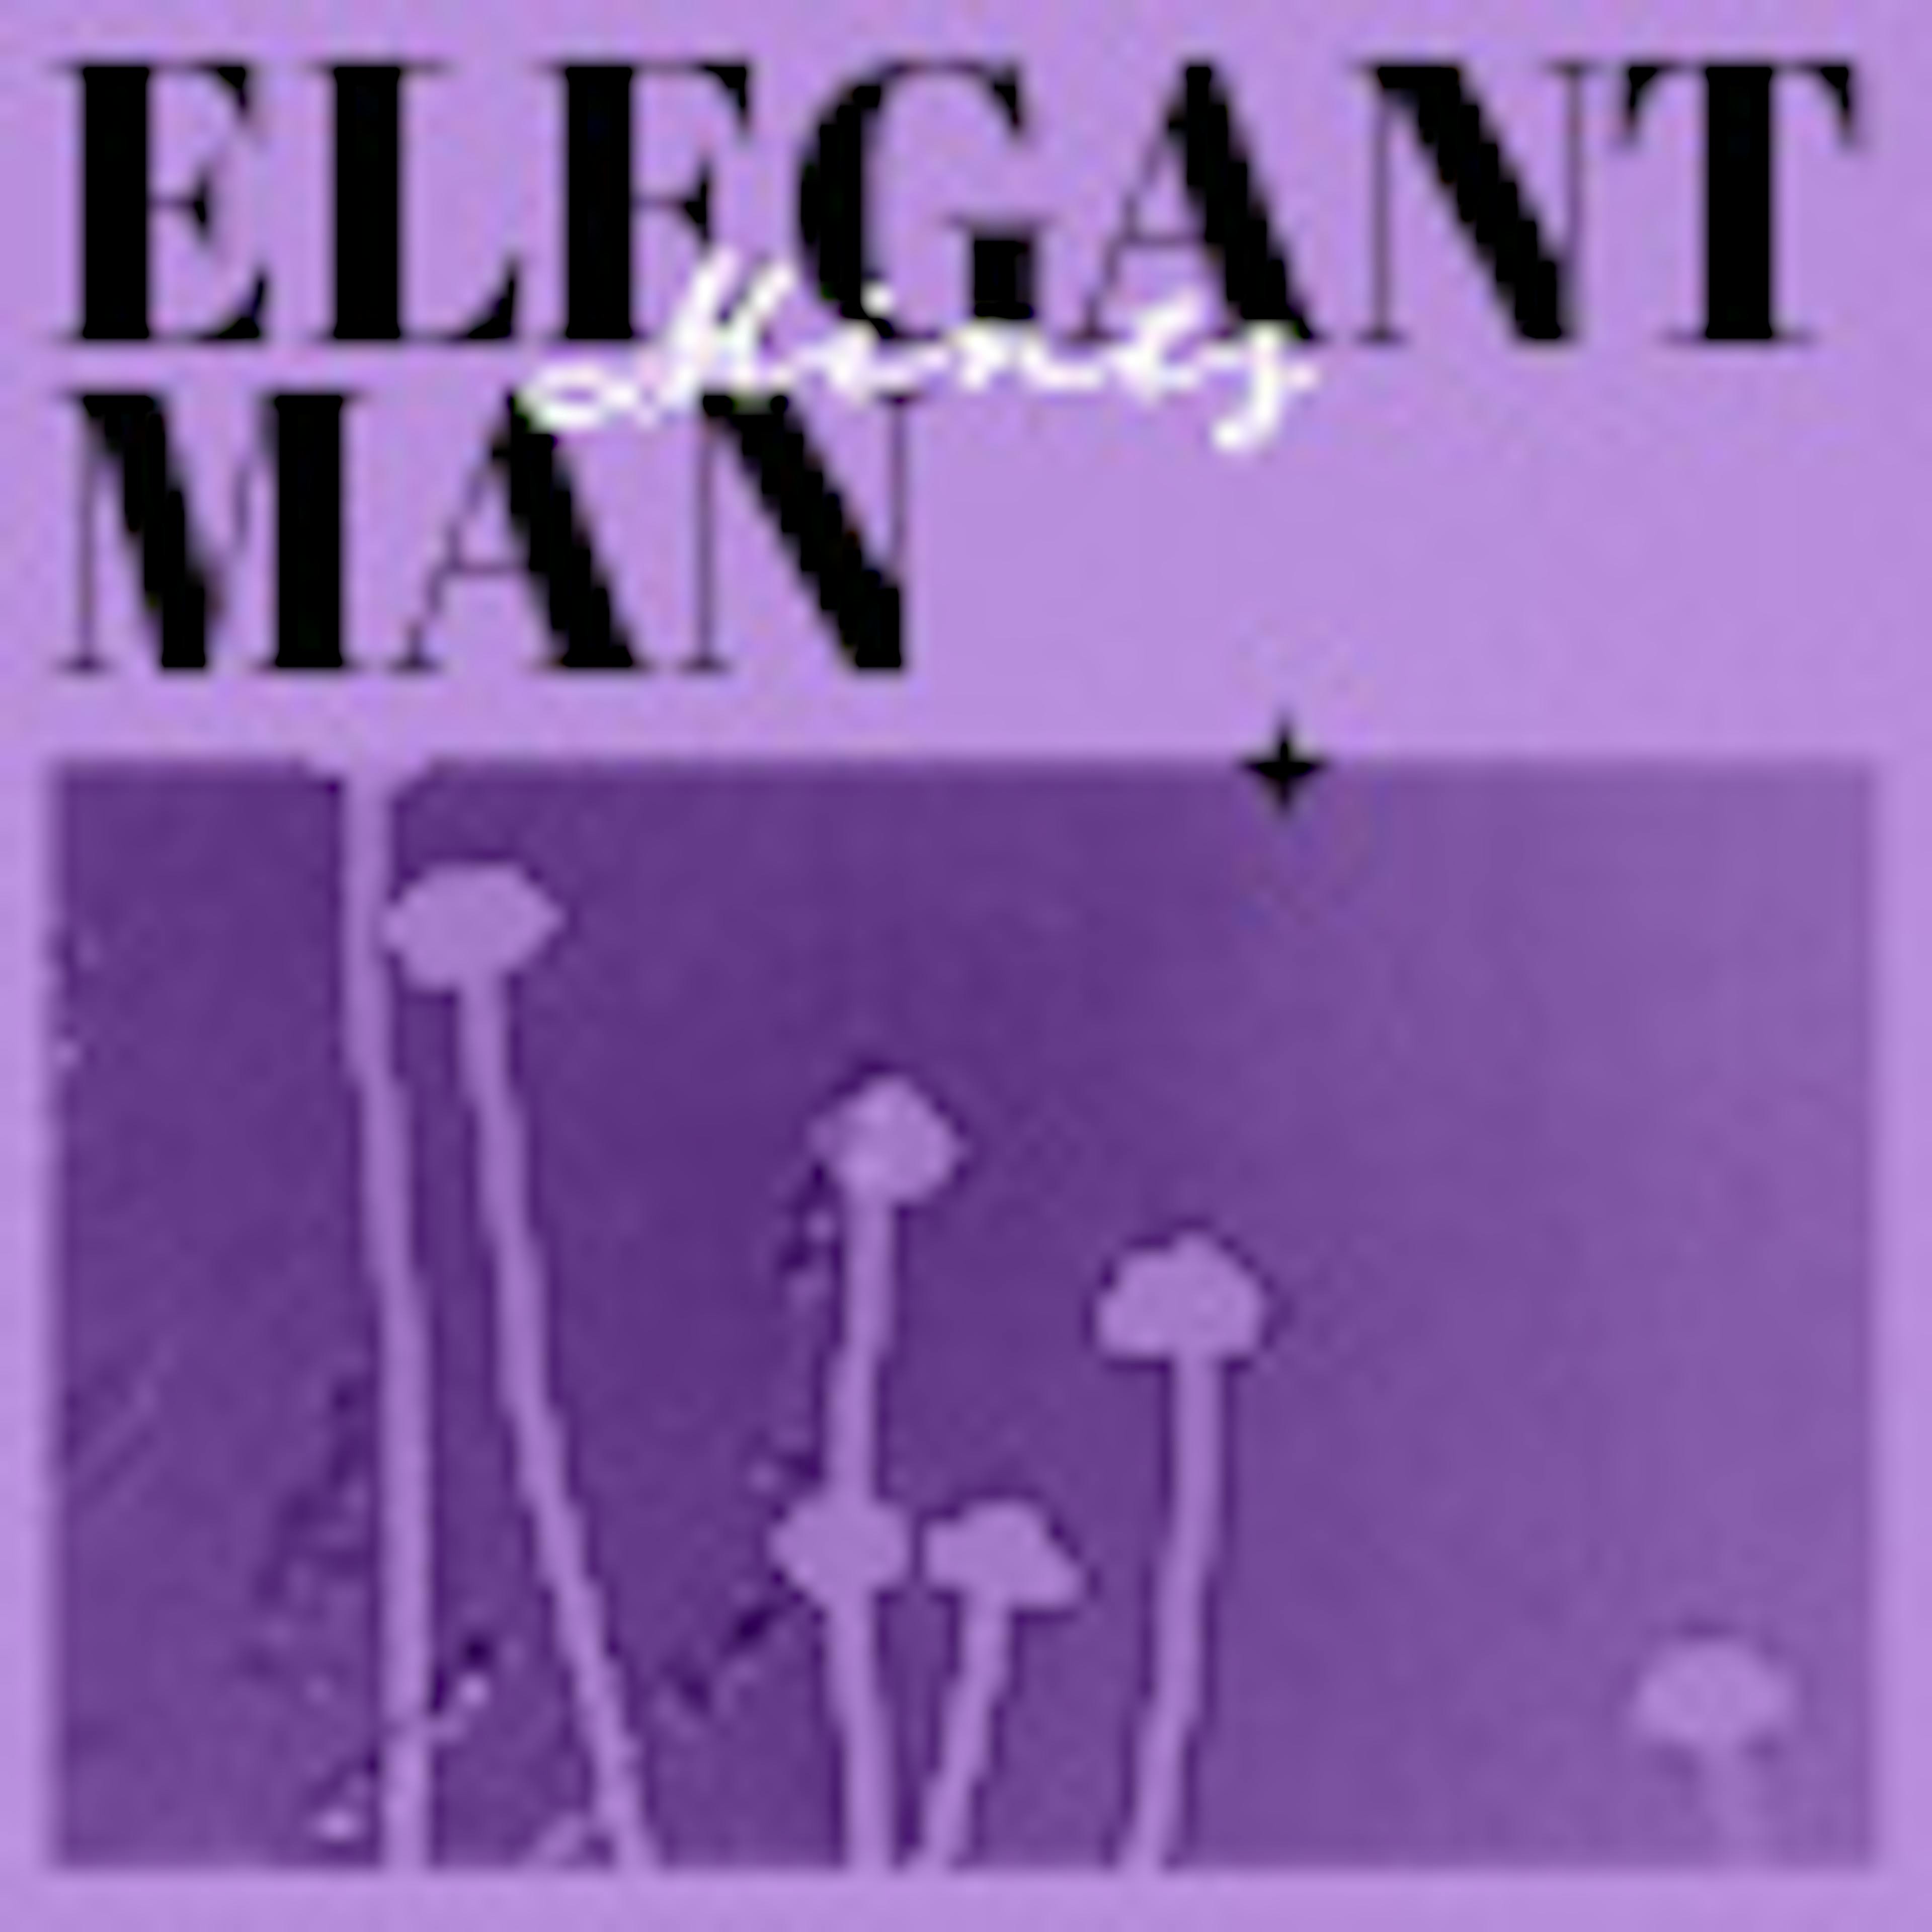 Elegant Man album cover